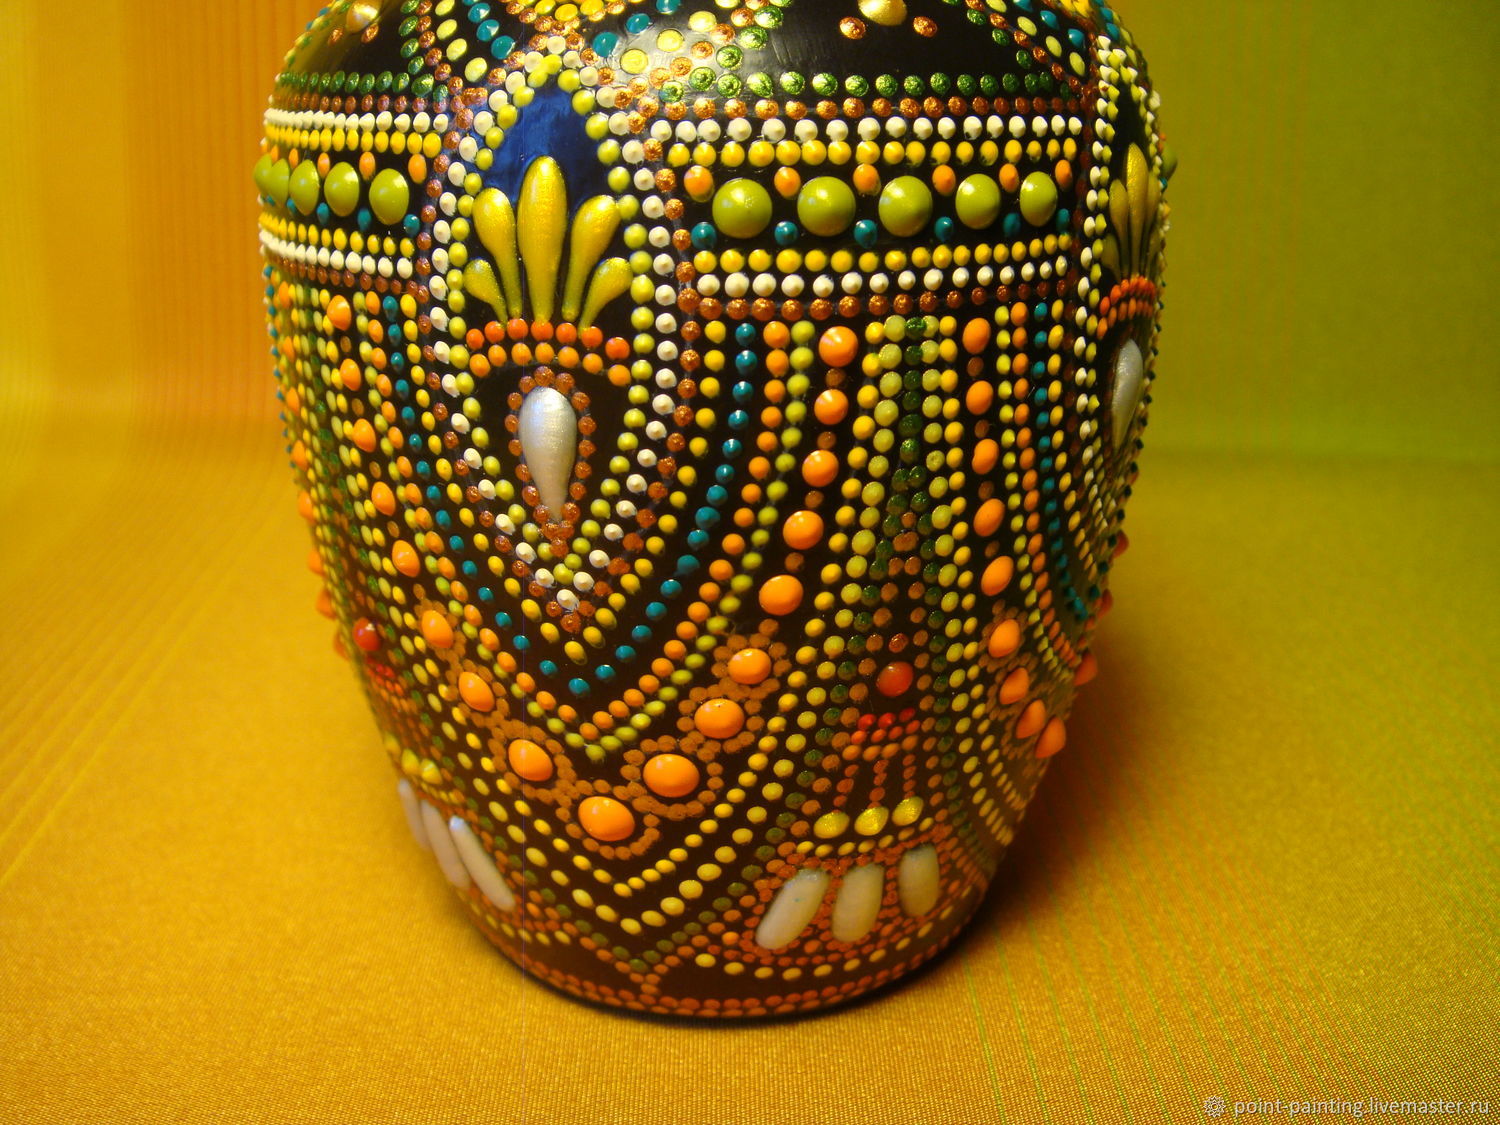 Декоративная ваза "Королевская"